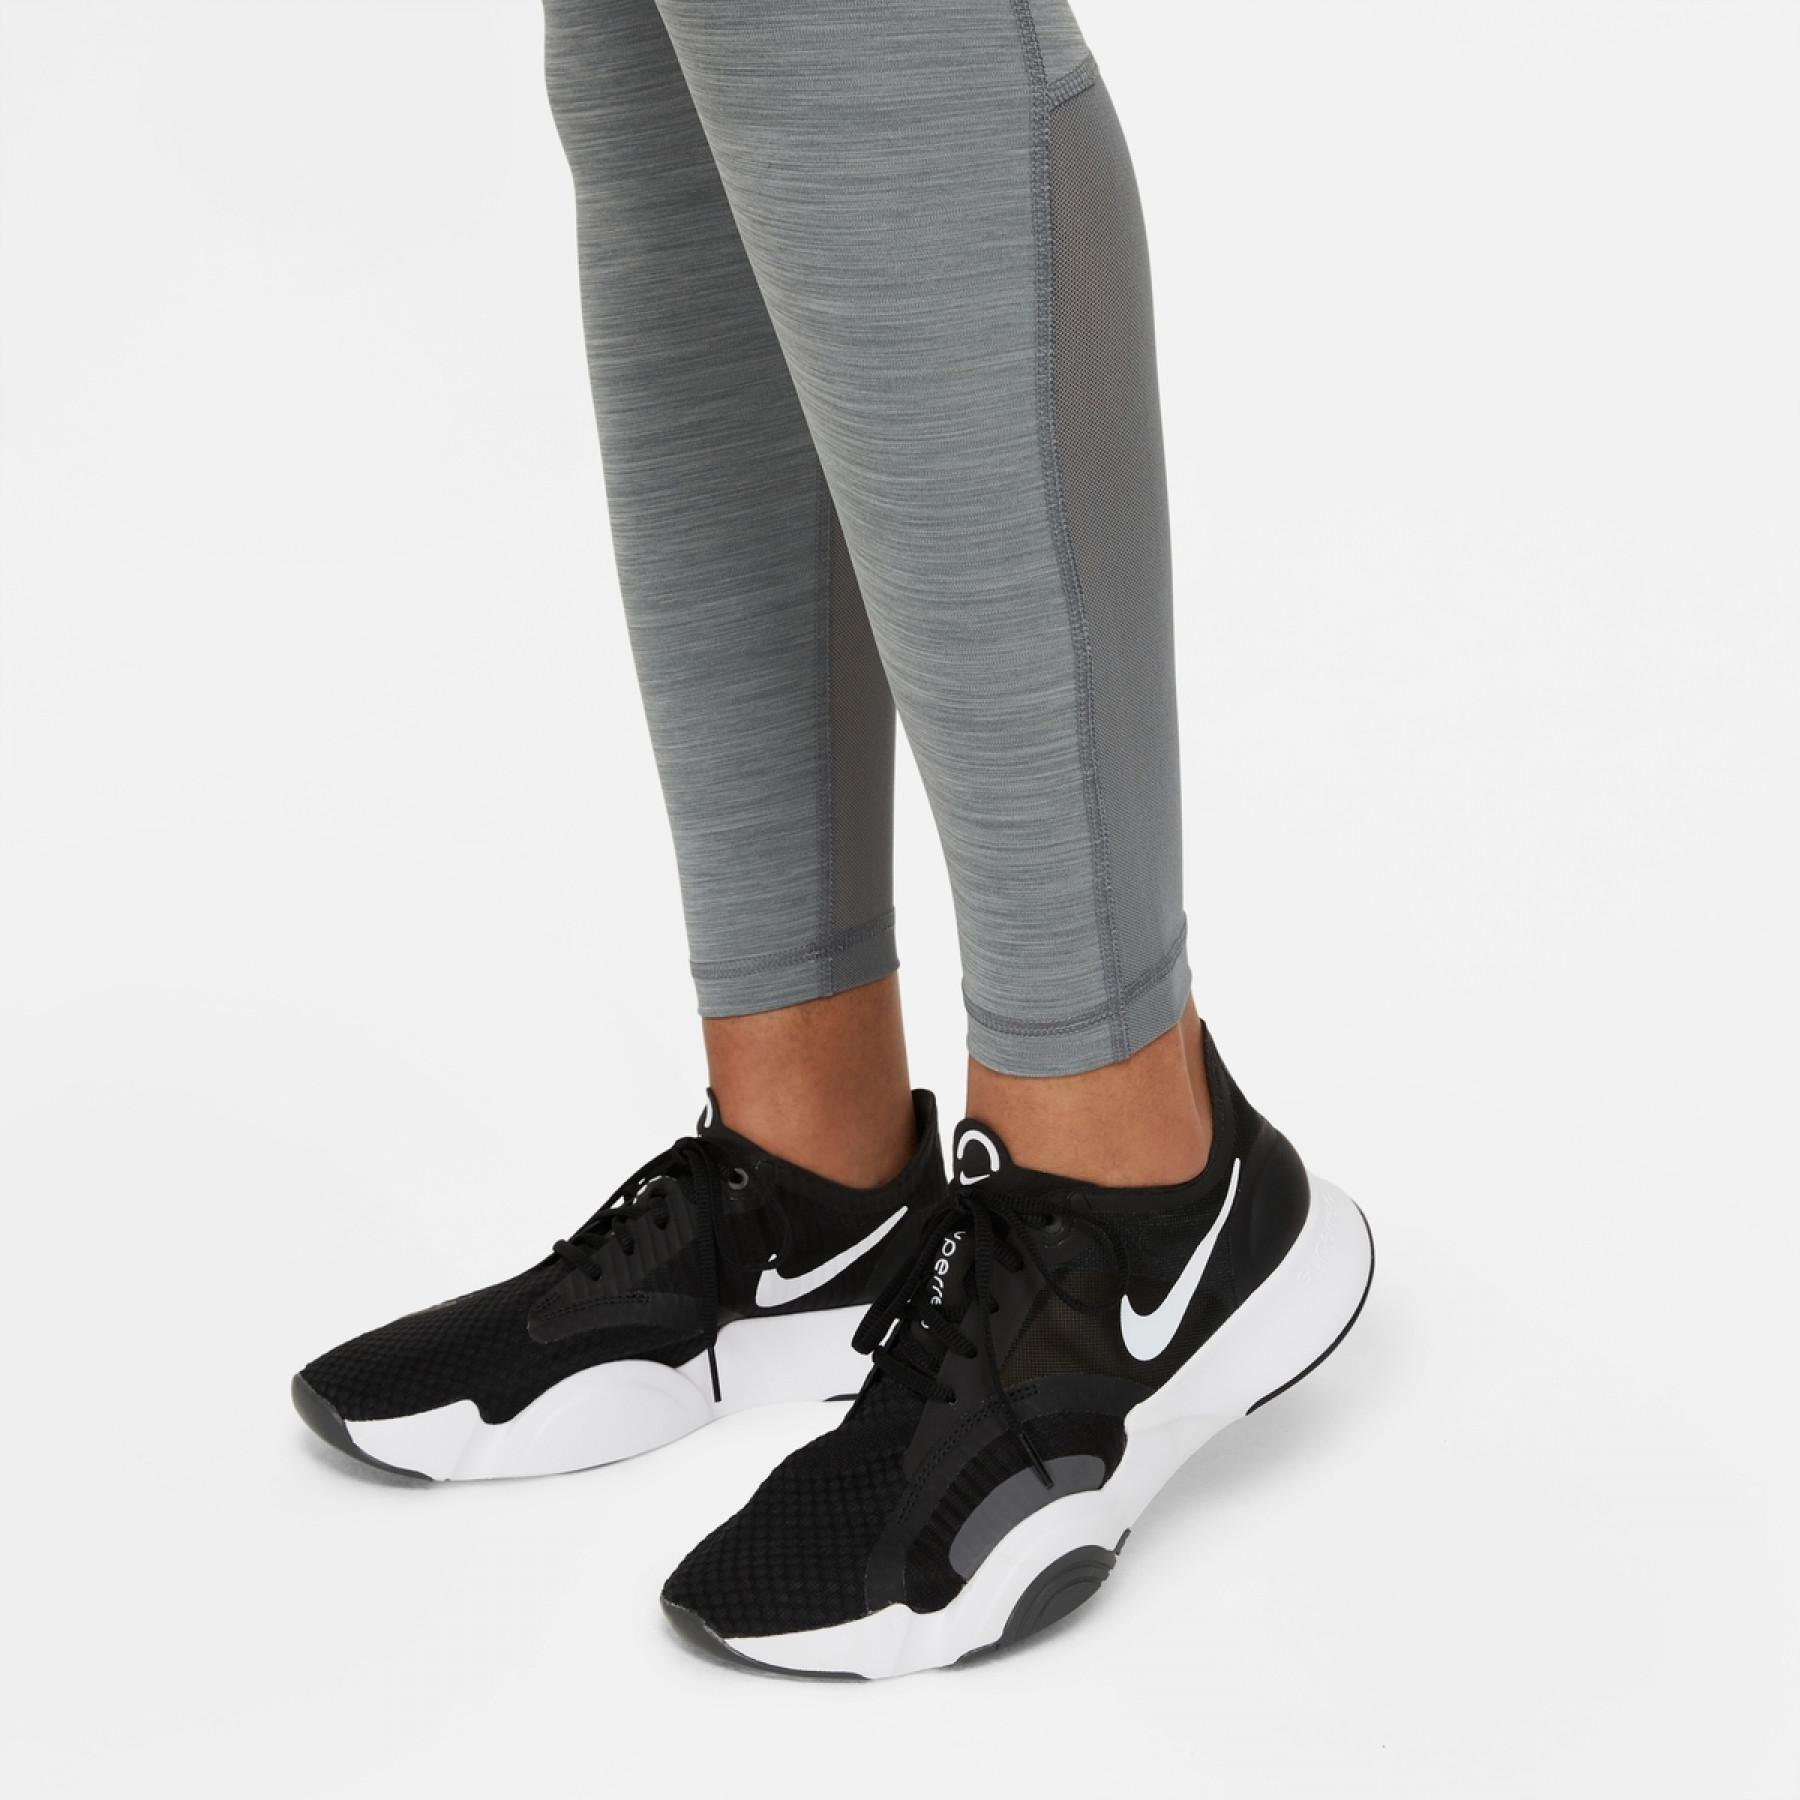 Women's Legging Nike Pro 365 - Baselayers - Women's wear - Handball wear